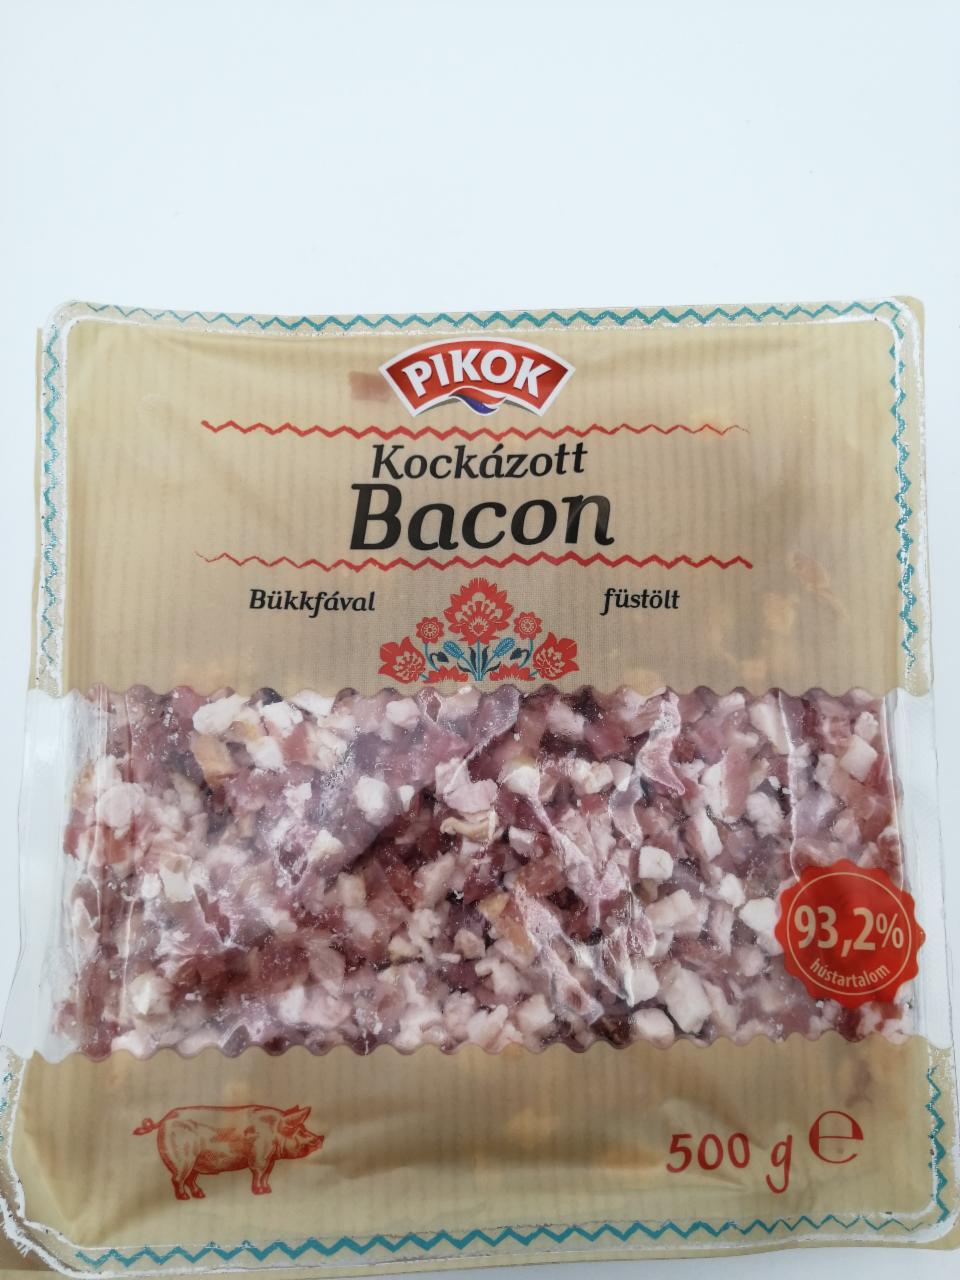 Képek - Kockázott bacon Pikok